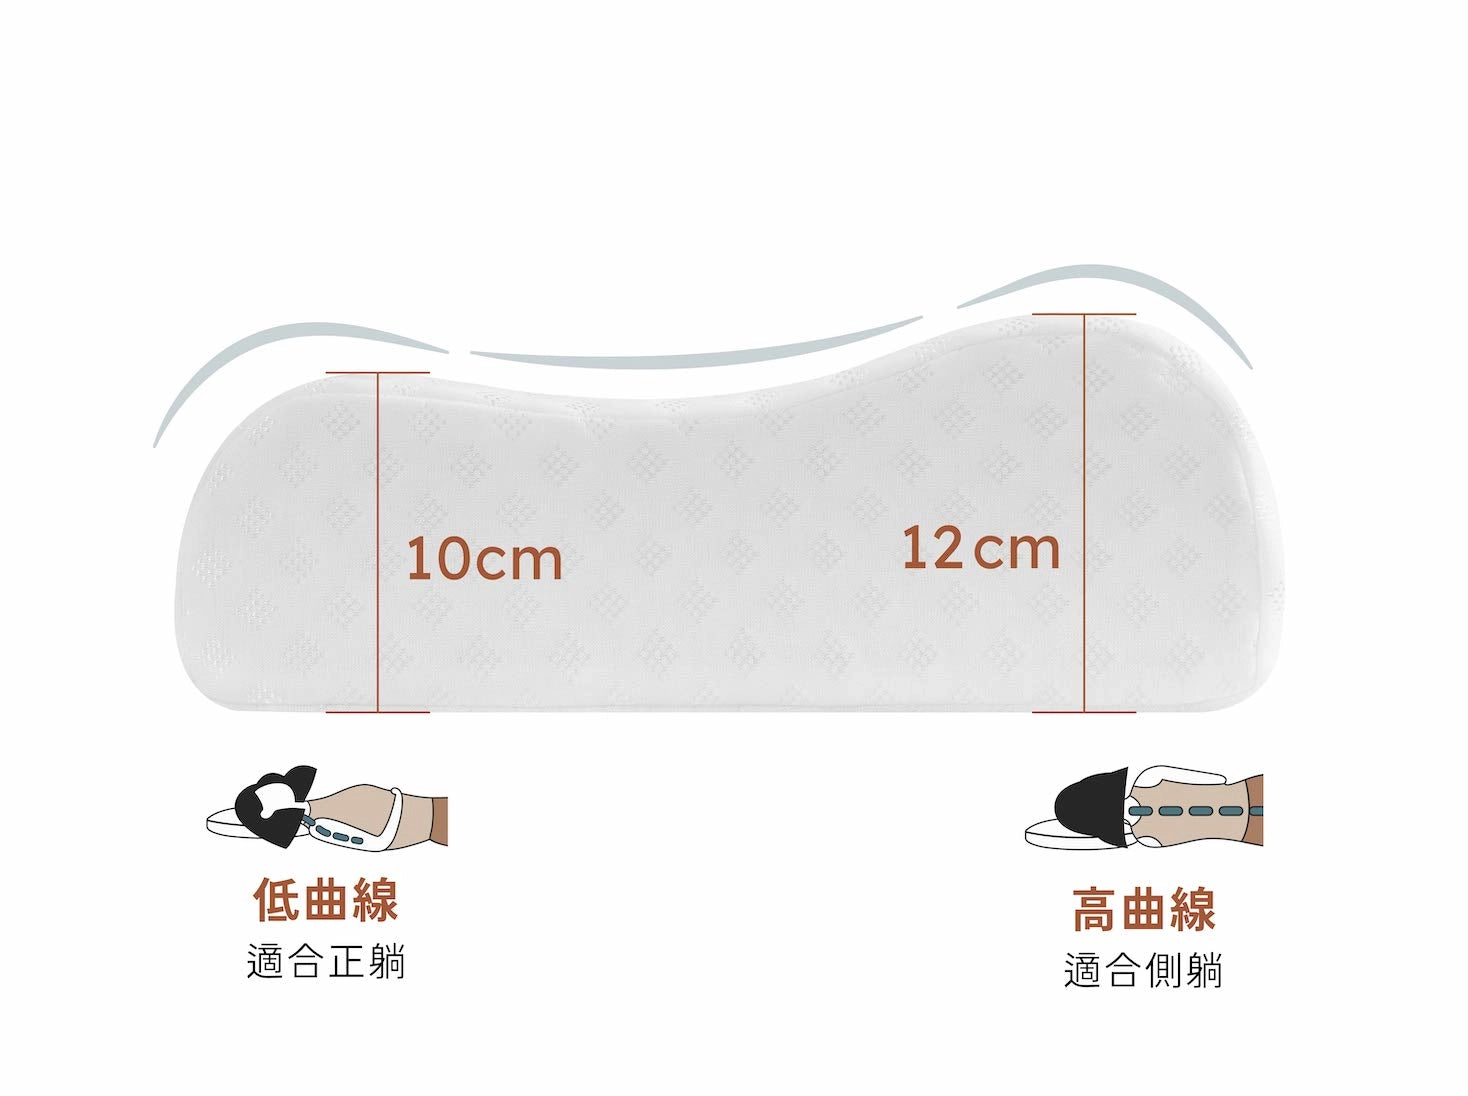 立體按摩乳膠枕產品特色照 3 - 兩種高度 雙向可枕